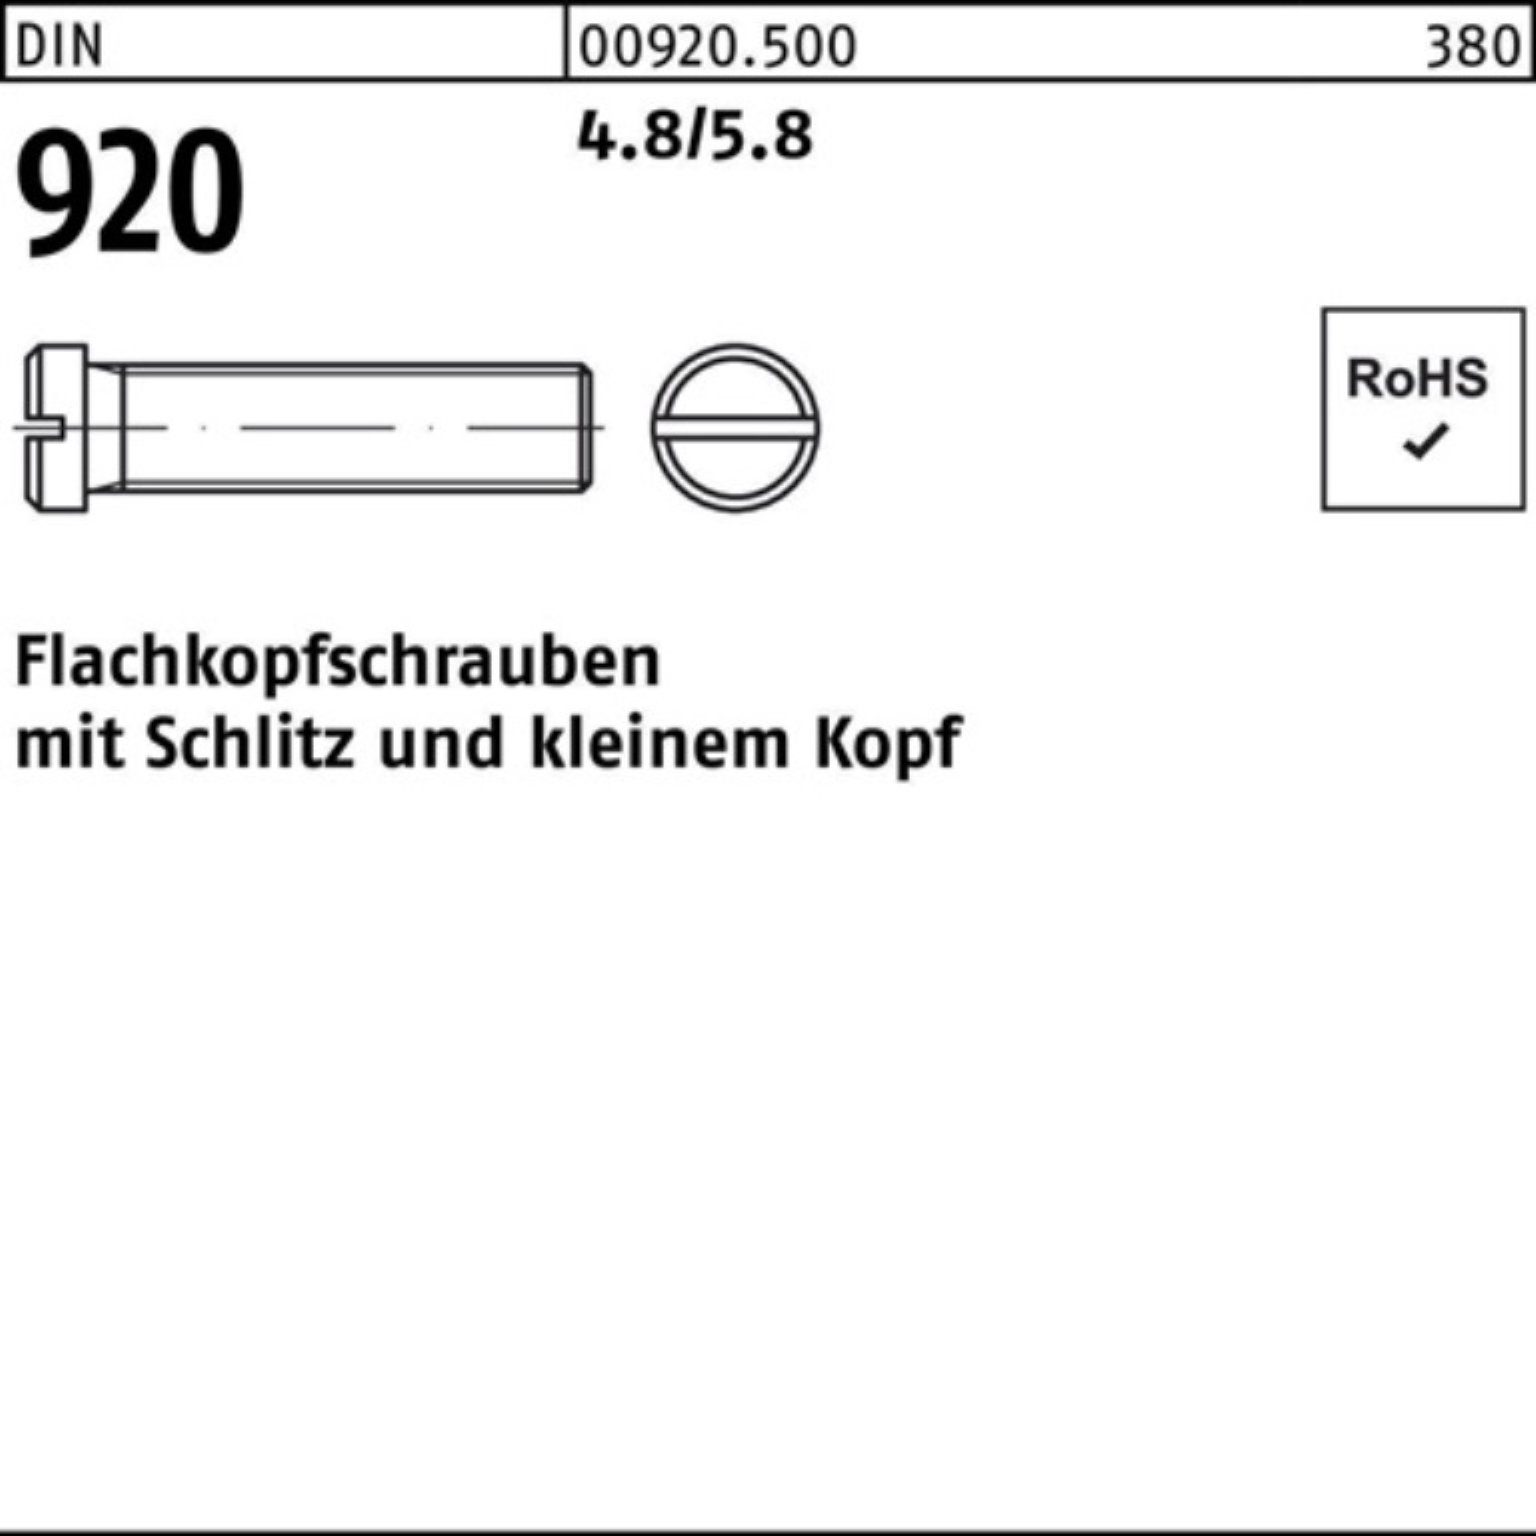 Reyher Schraube 100er Pack Flachkopfschraube DIN 920 Schlitz M5x 8 4.8/5.8 100 Stück